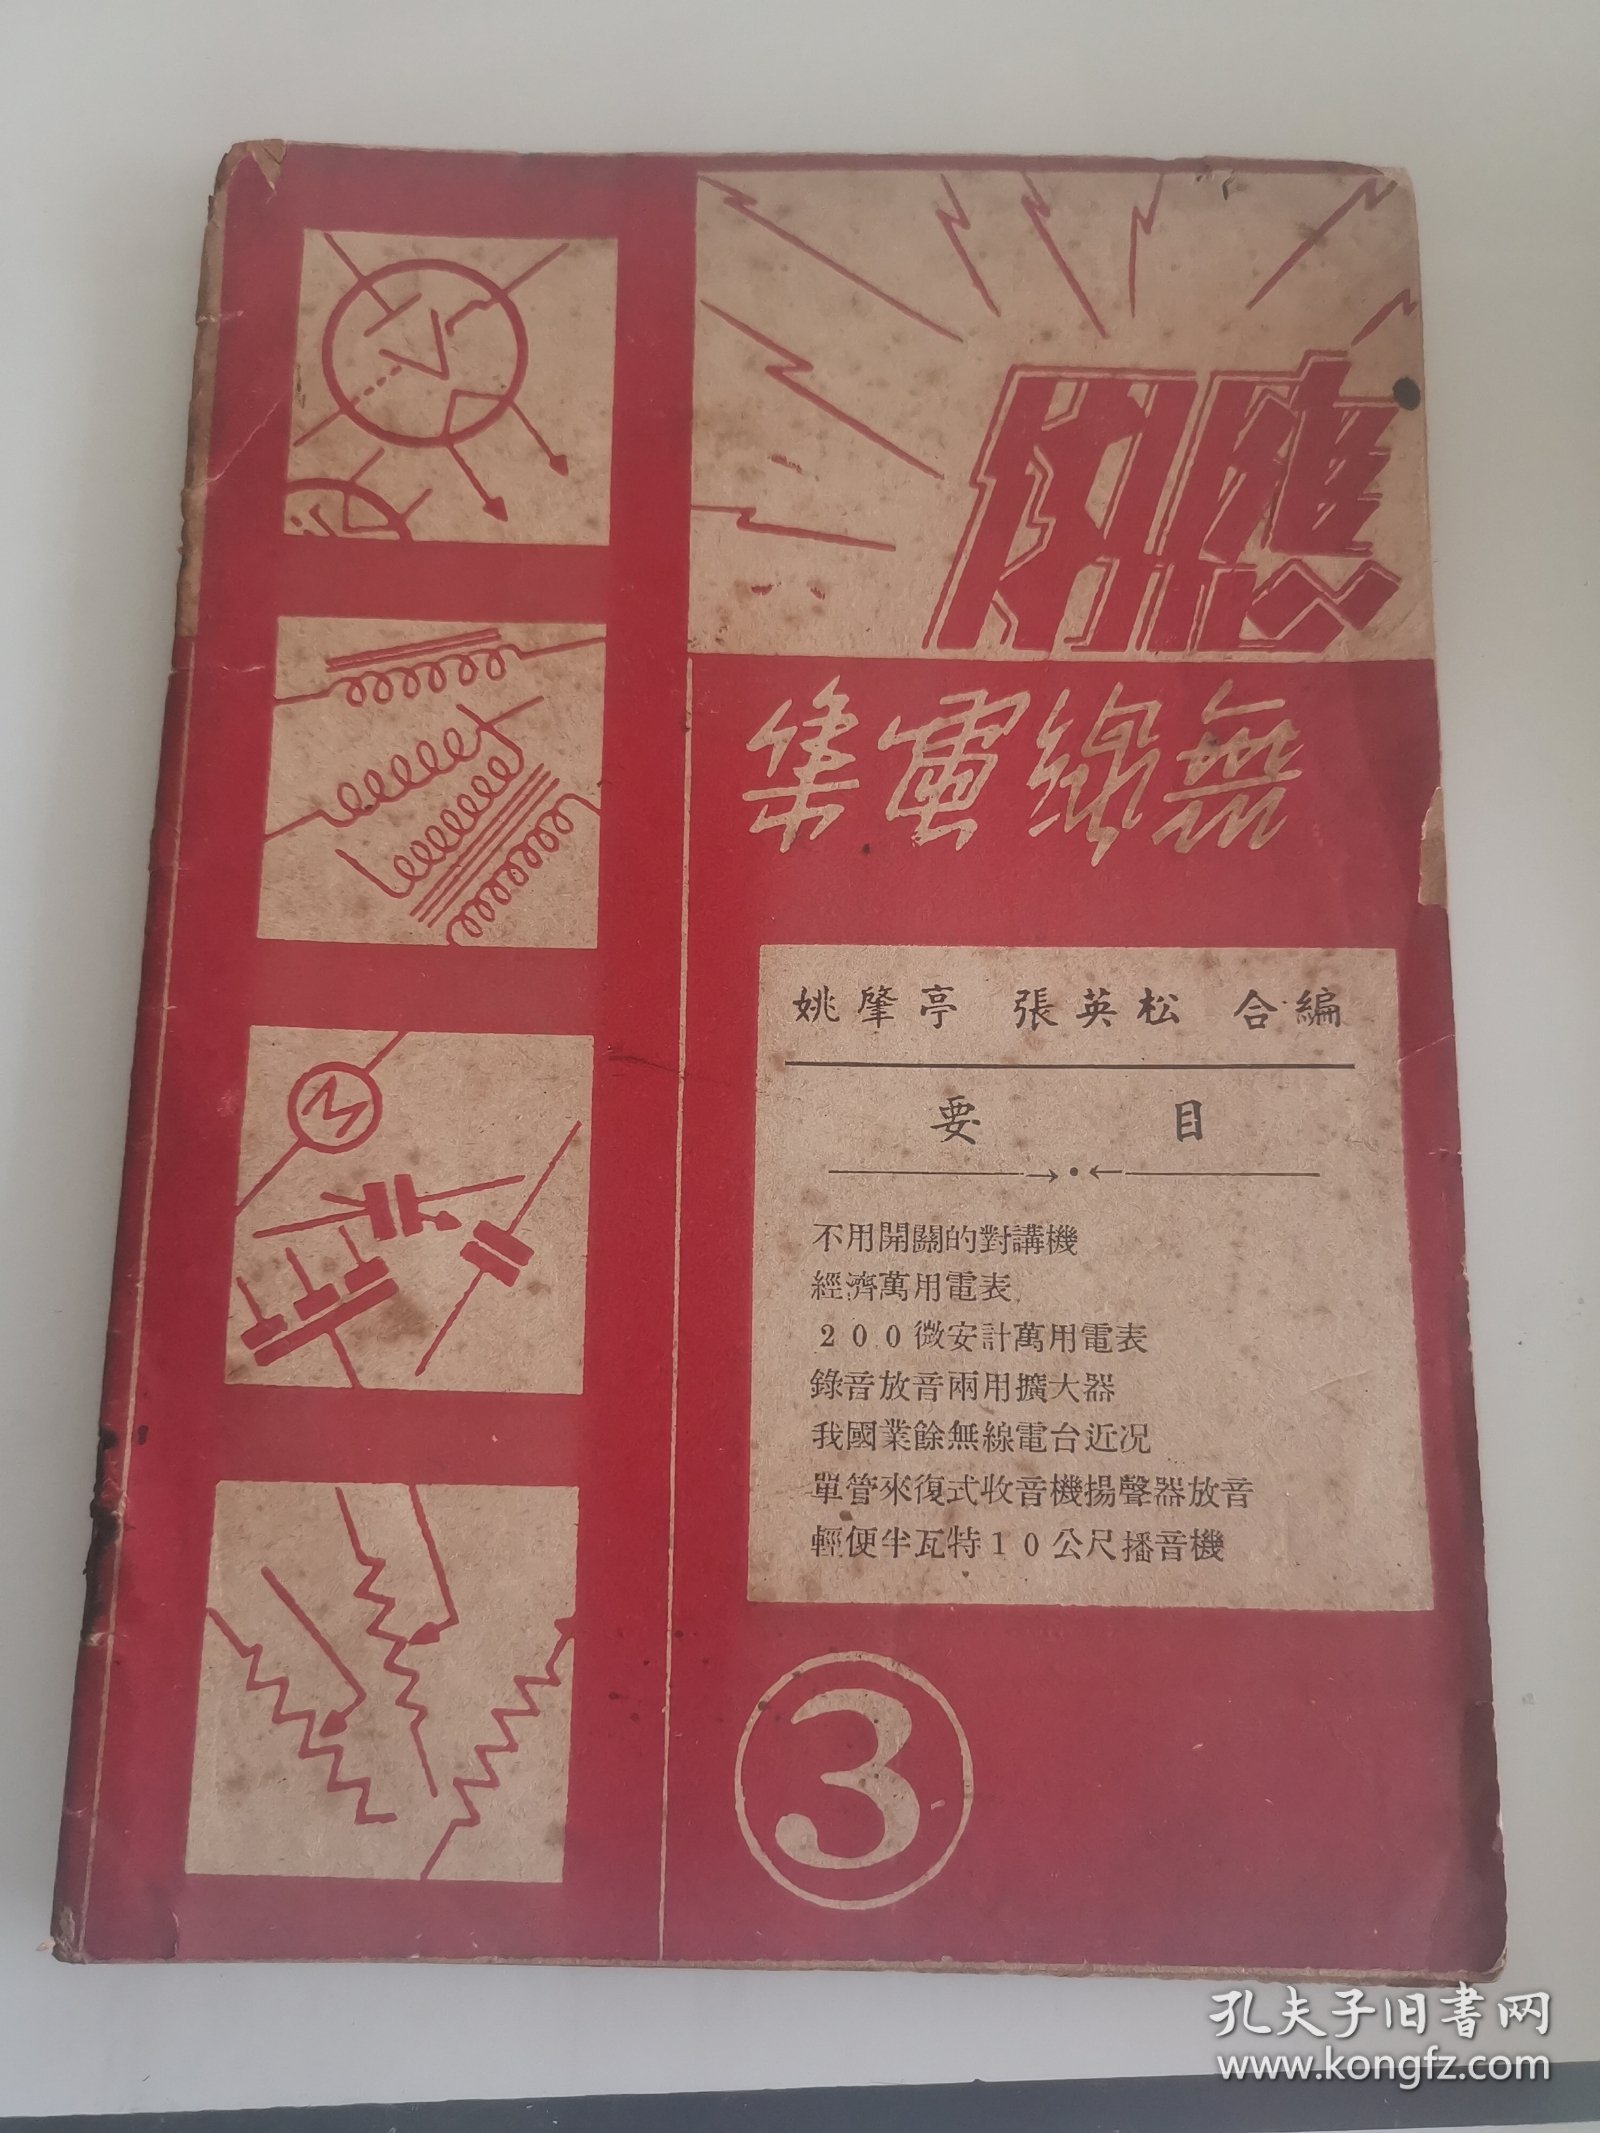 應用無線電集(3):【32开】中华民国三十七年十月初版